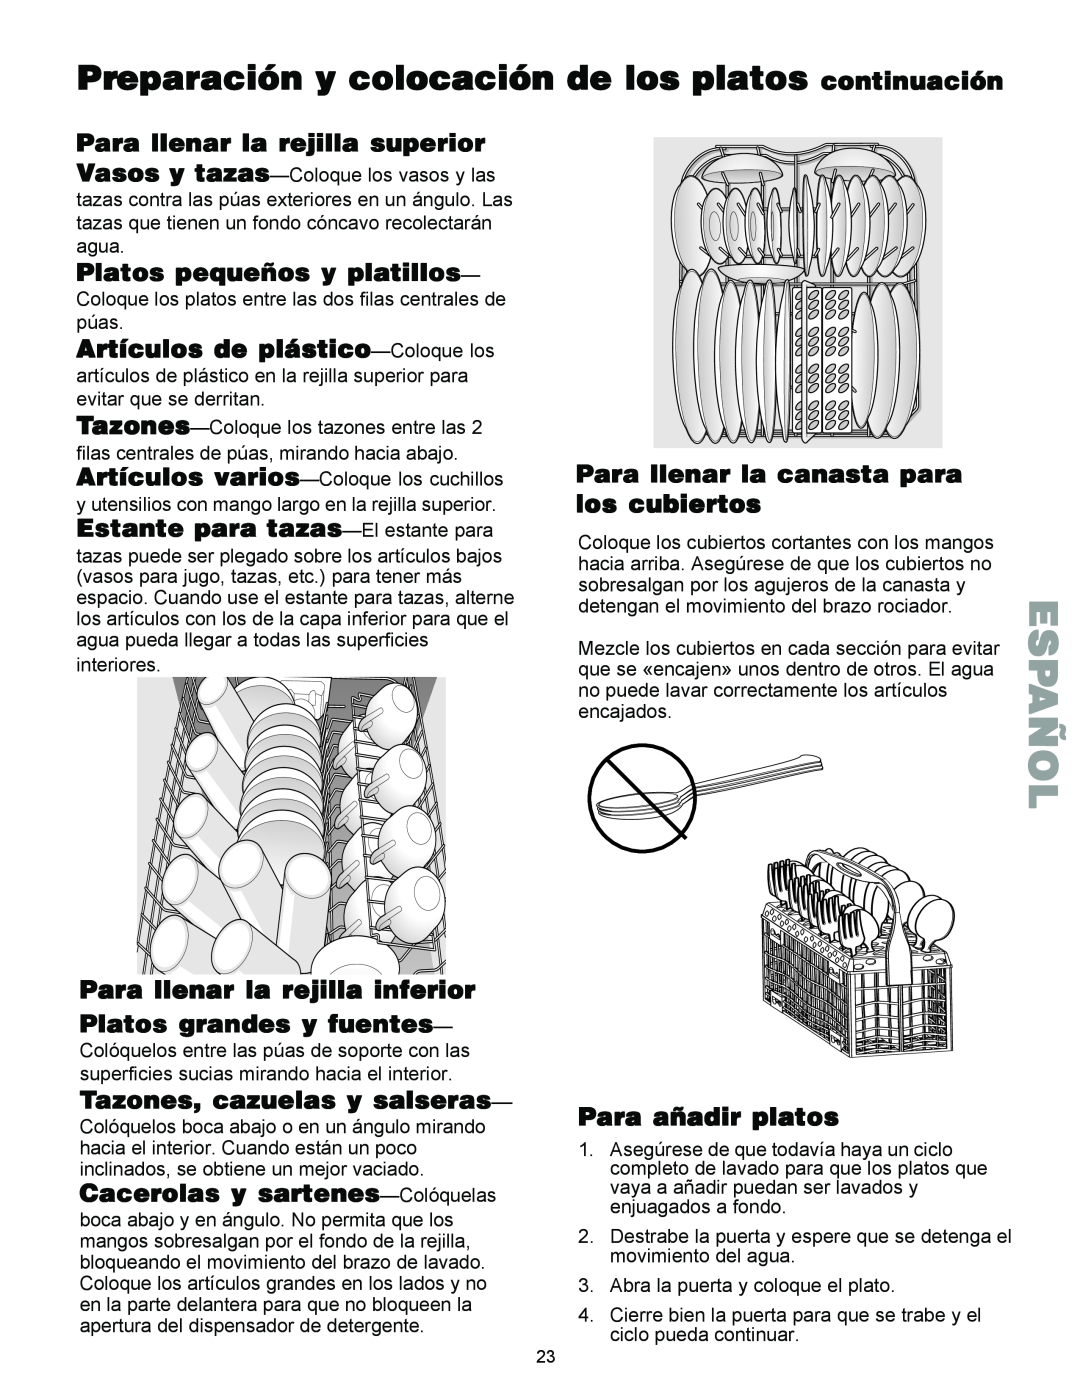 Kenmore 587.144 Para llenar la rejilla superior, Platos pequeños y platillos, Artículos de plástico-Coloquelos, Español 